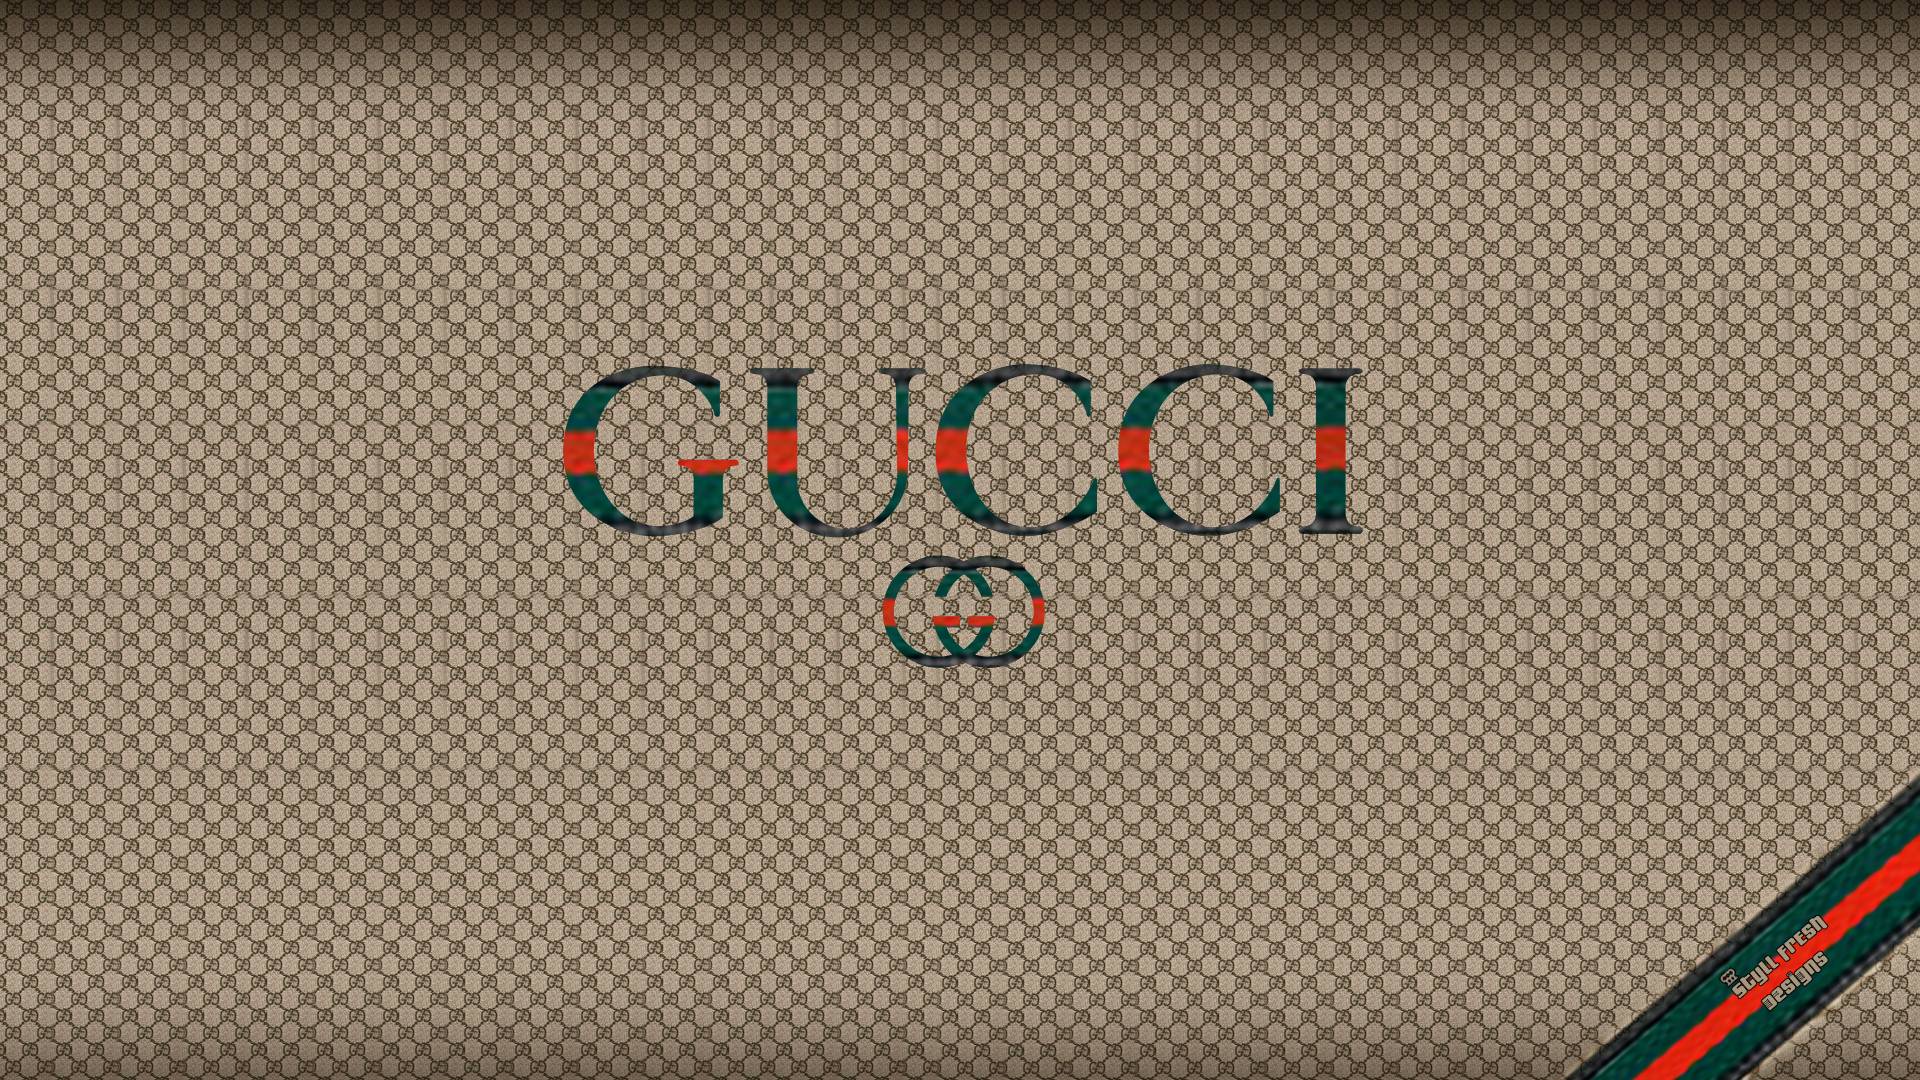 22+] Gucci.com Wallpapers - WallpaperSafari